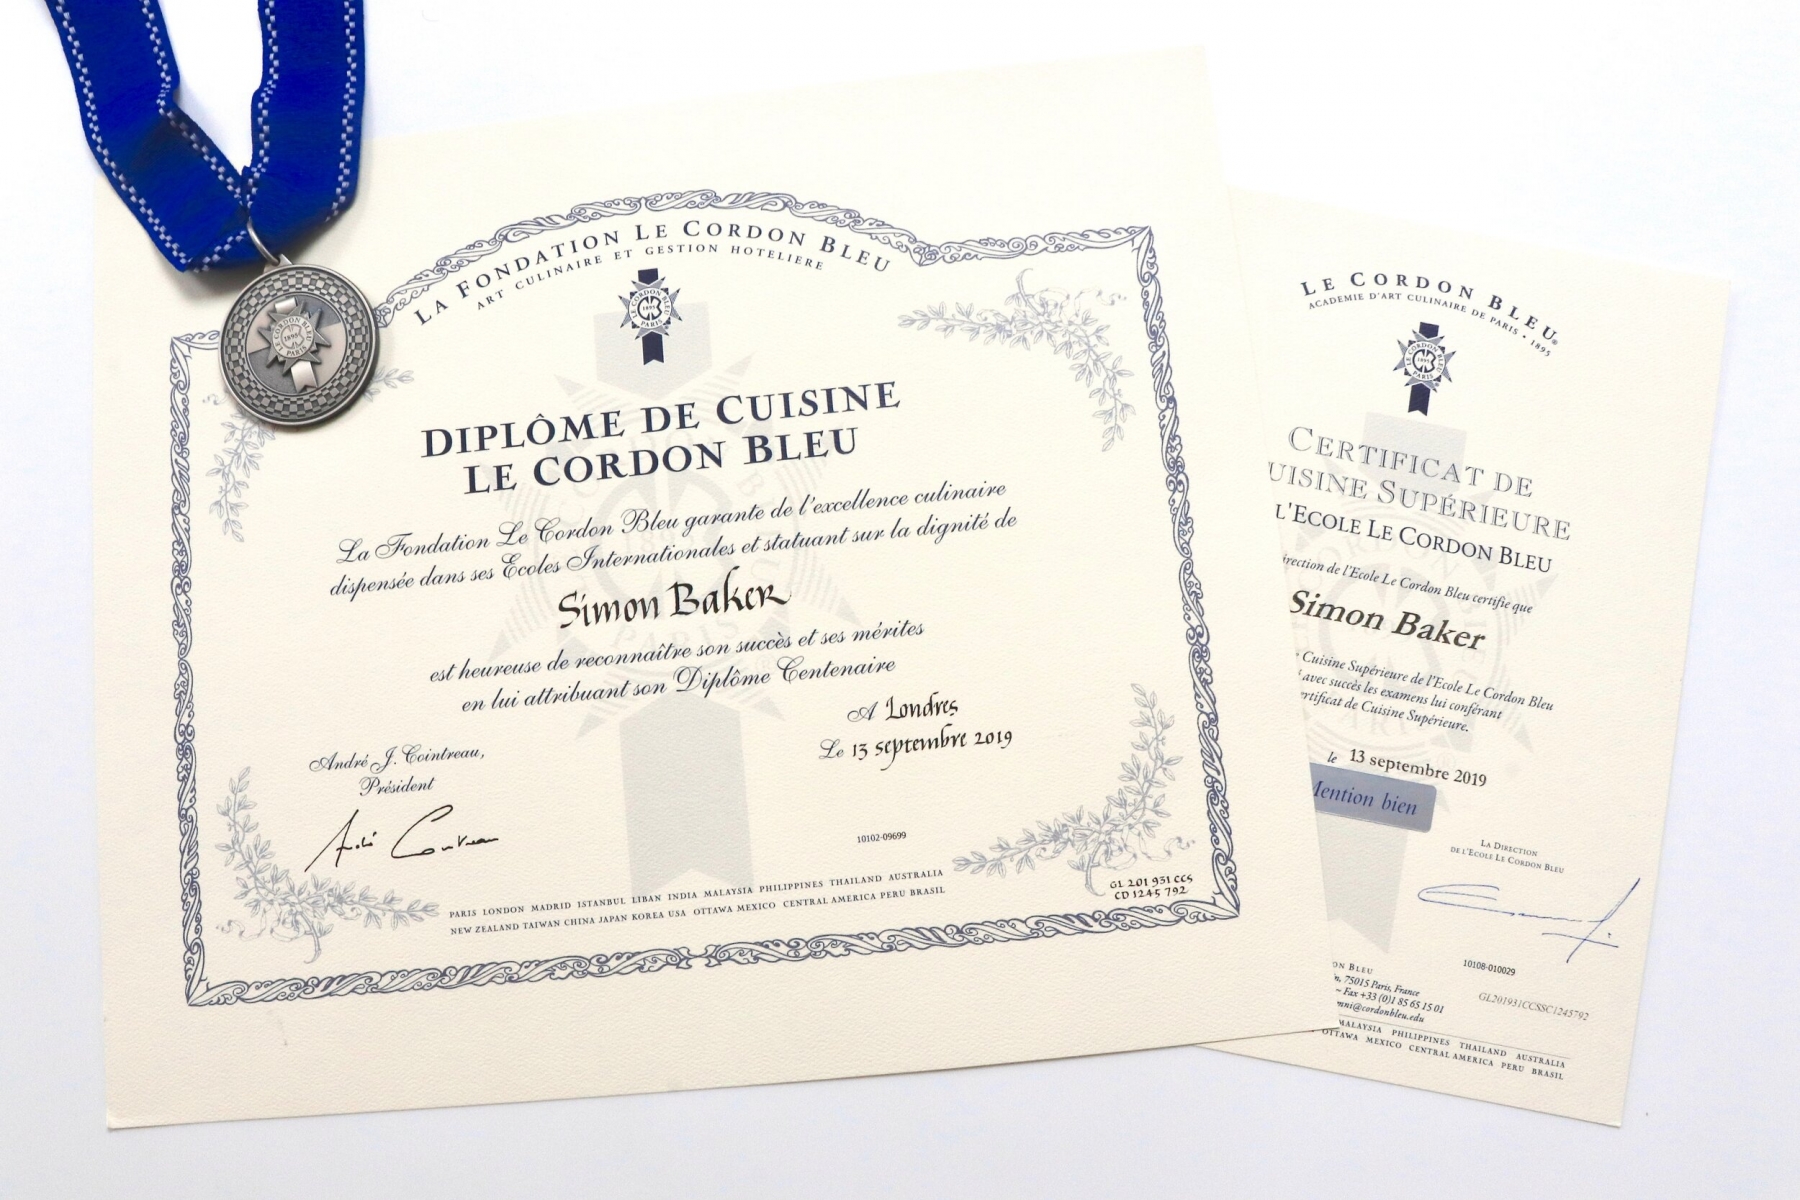 Học viên sẽ được trao văn bằng danh giá sau khi hoàn thành khóa học Diplome de Cuisine